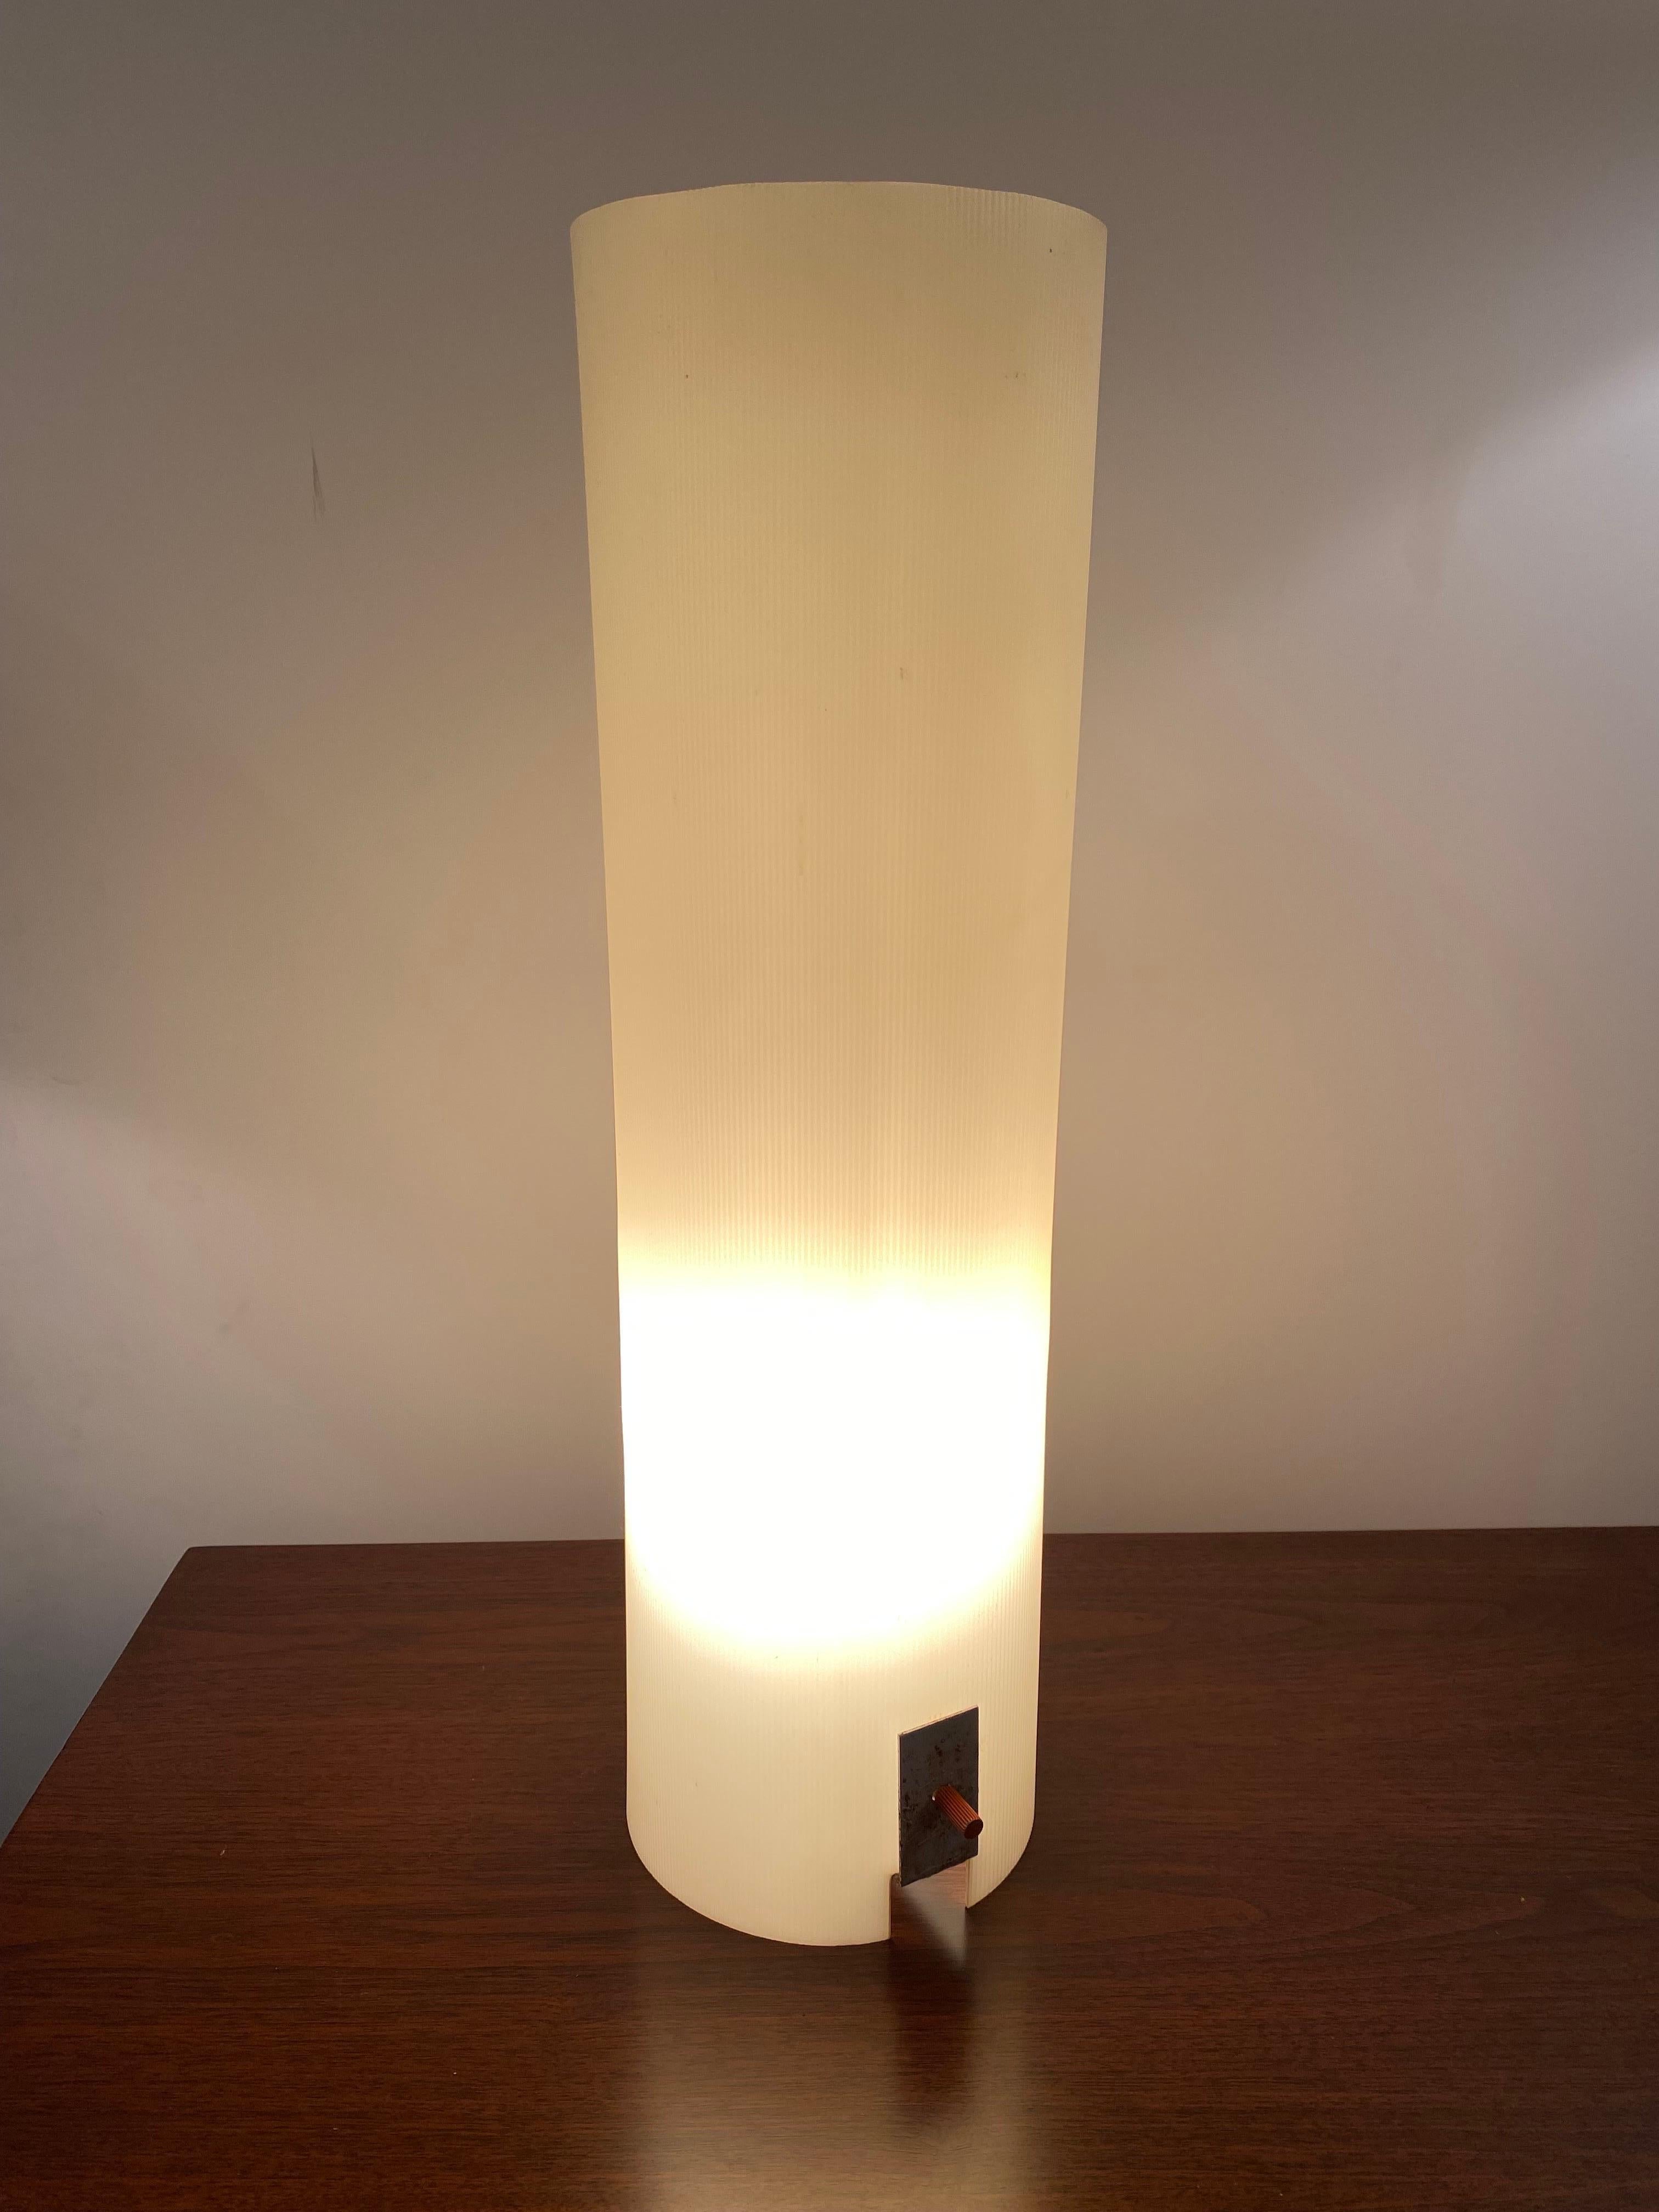 Minimalistische Lampe von Bill Curry für sein Unternehmen Design Line. Entworfen und hergestellt in El Segundo, CA in den 1960er Jahren. Harter extrudierter gerippter Kunststoff mit emailliertem weißem Metallrahmen. Die Lampe leuchtet, wenn sie